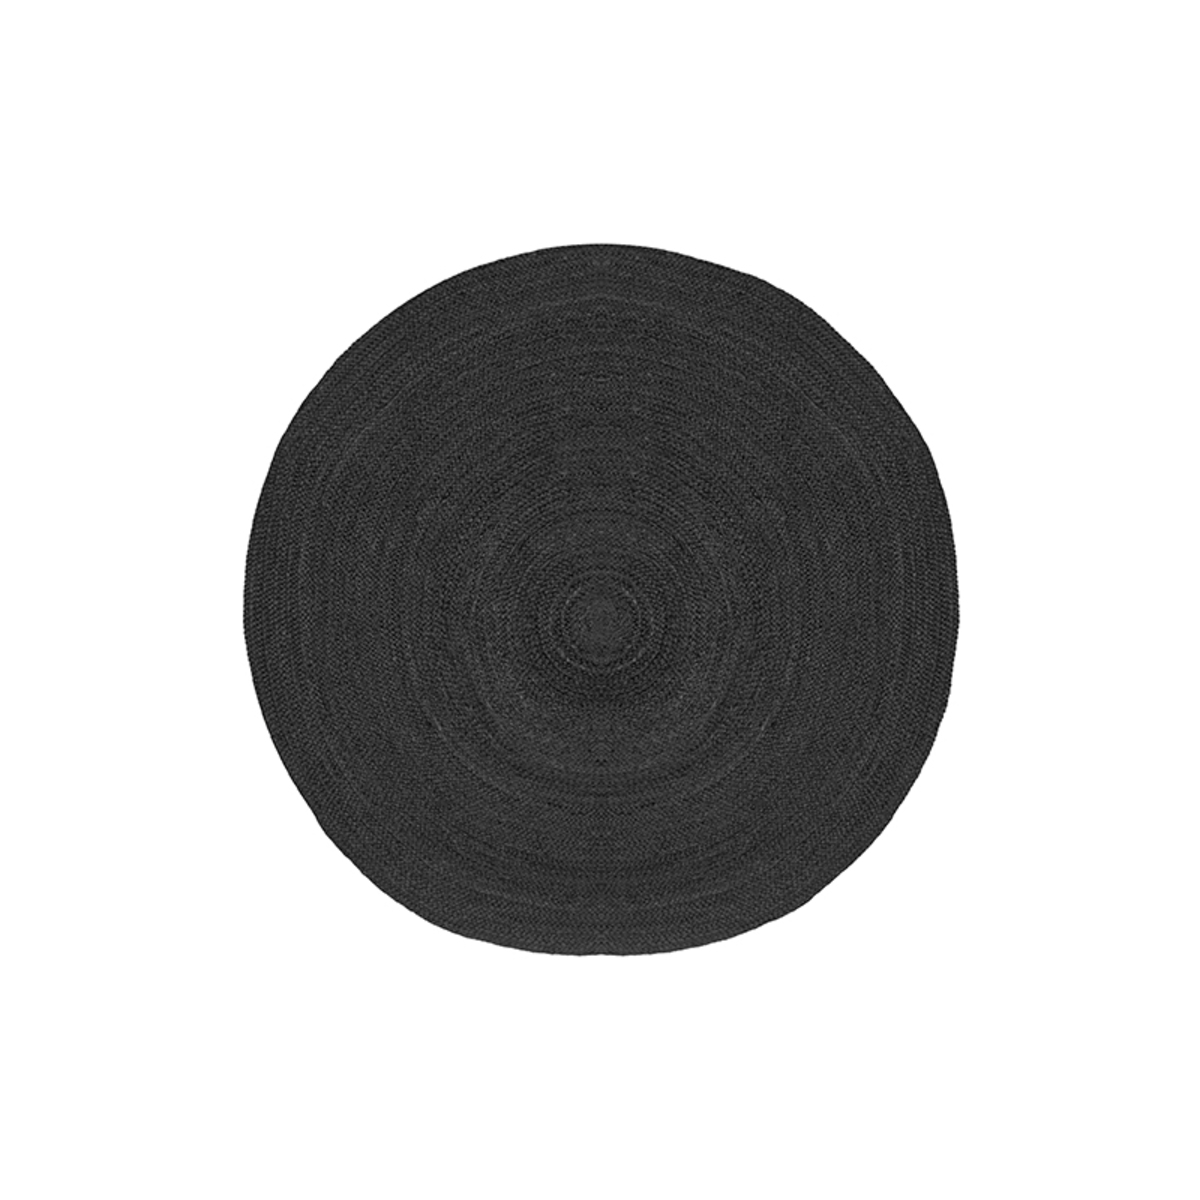  Vloerkleed Jute - Zwart - Jute - 90 cm afbeelding 1